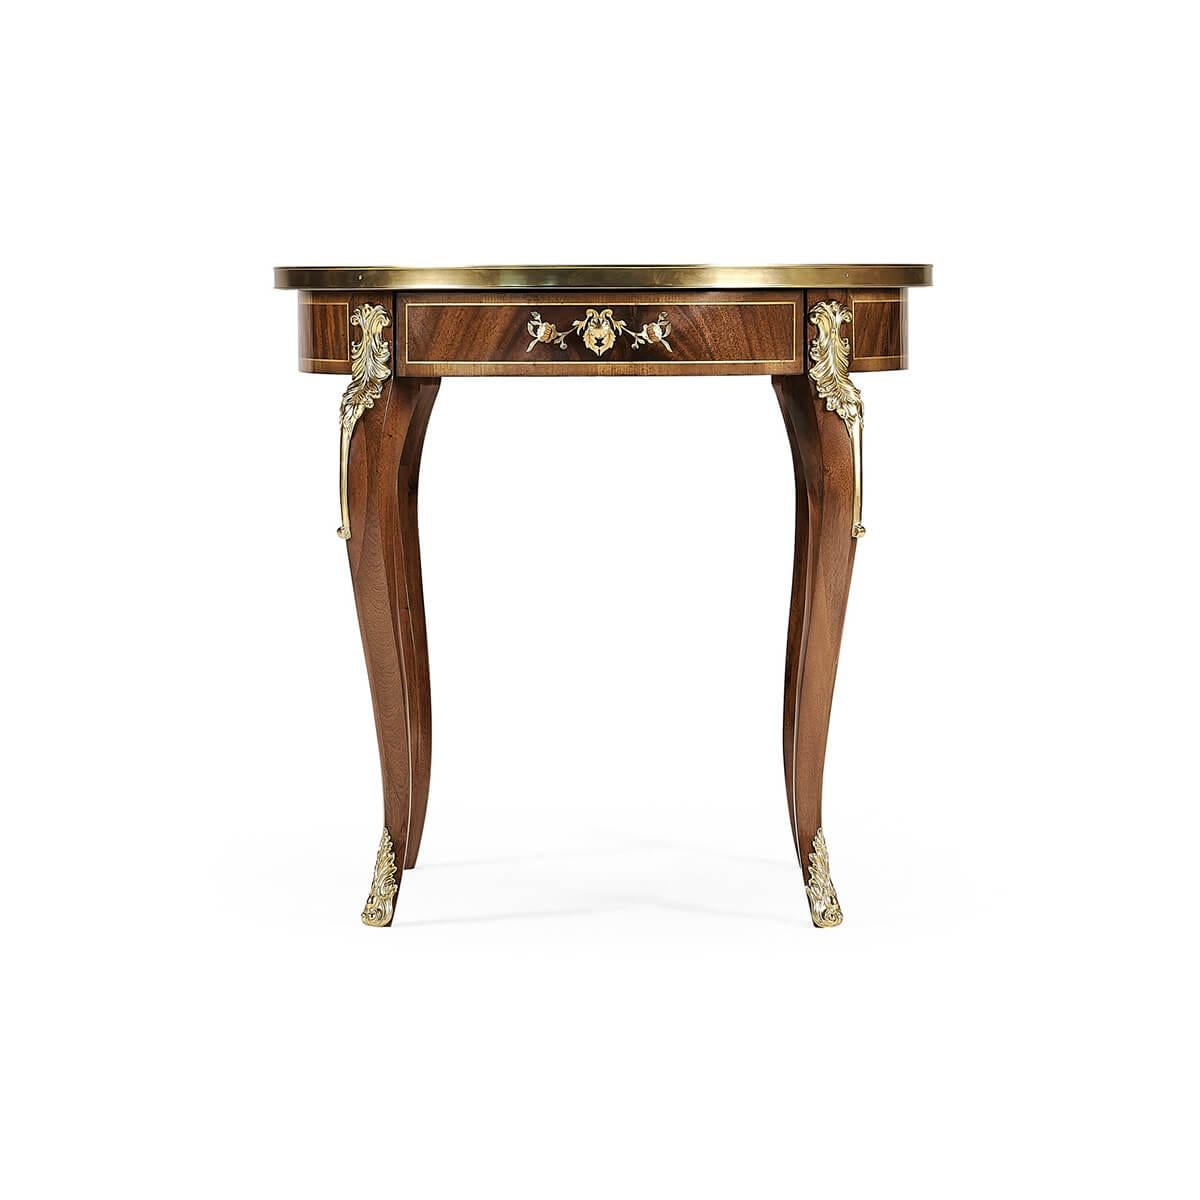 Table d'appoint ronde de style Louis XV en marqueterie de nacre avec garnitures et montures en laiton, un tiroir sur pieds cabriole.
Dimensions : 26